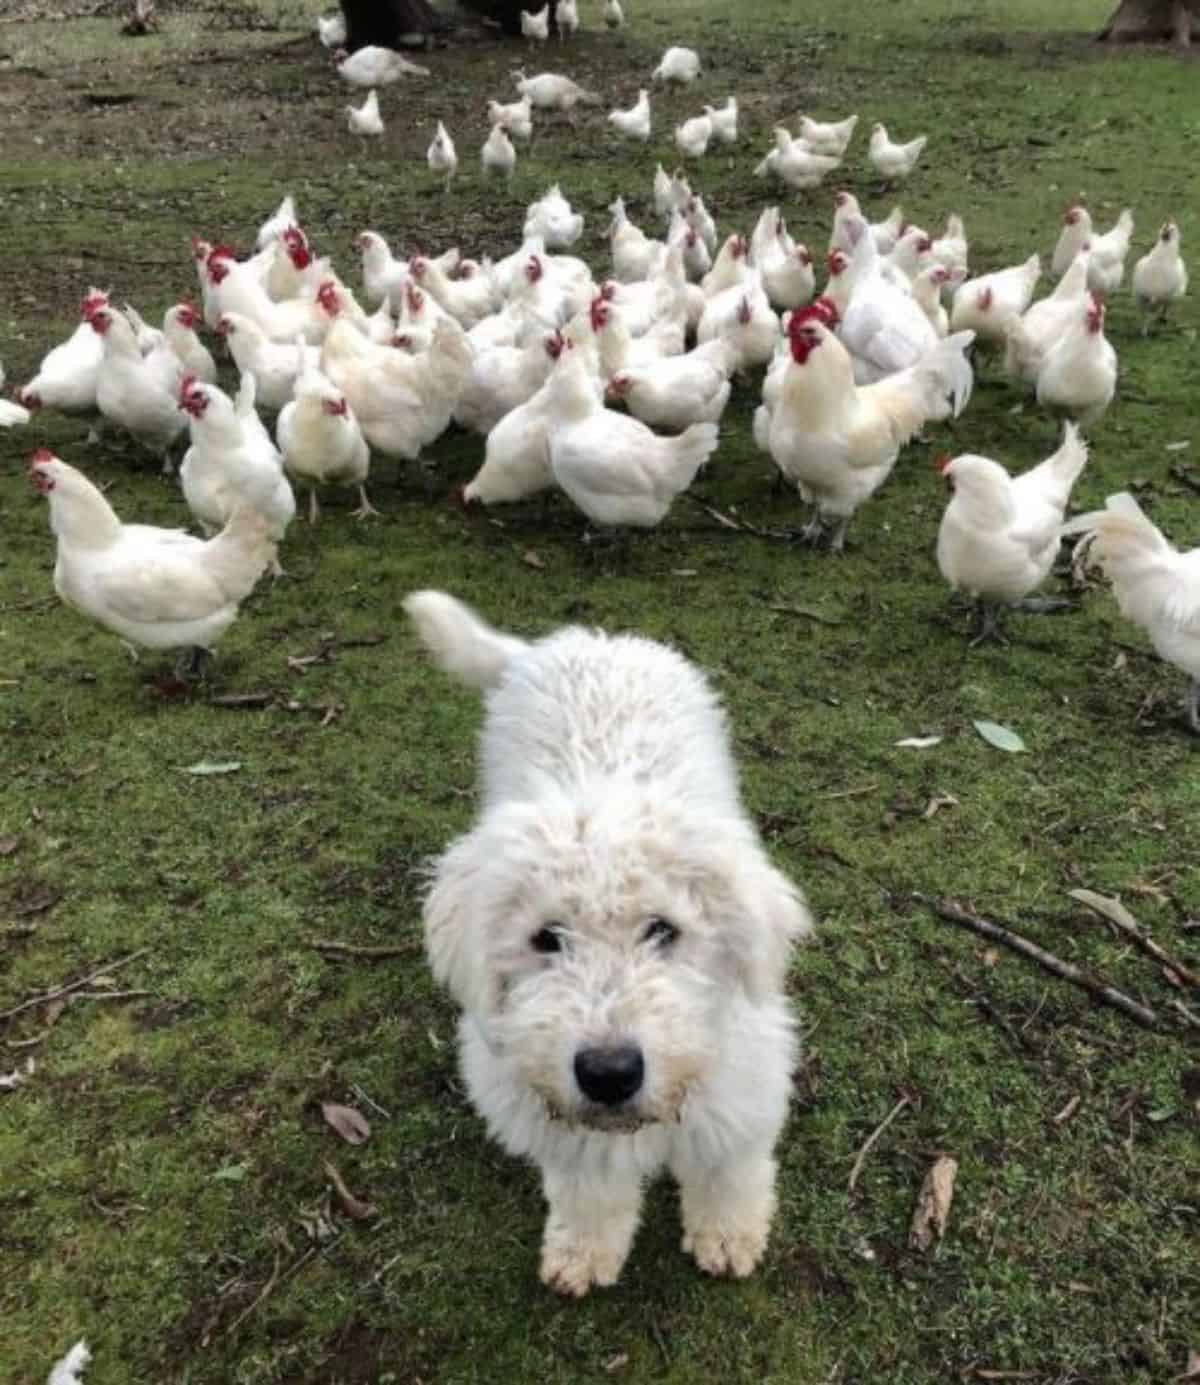 dog with chicken friends